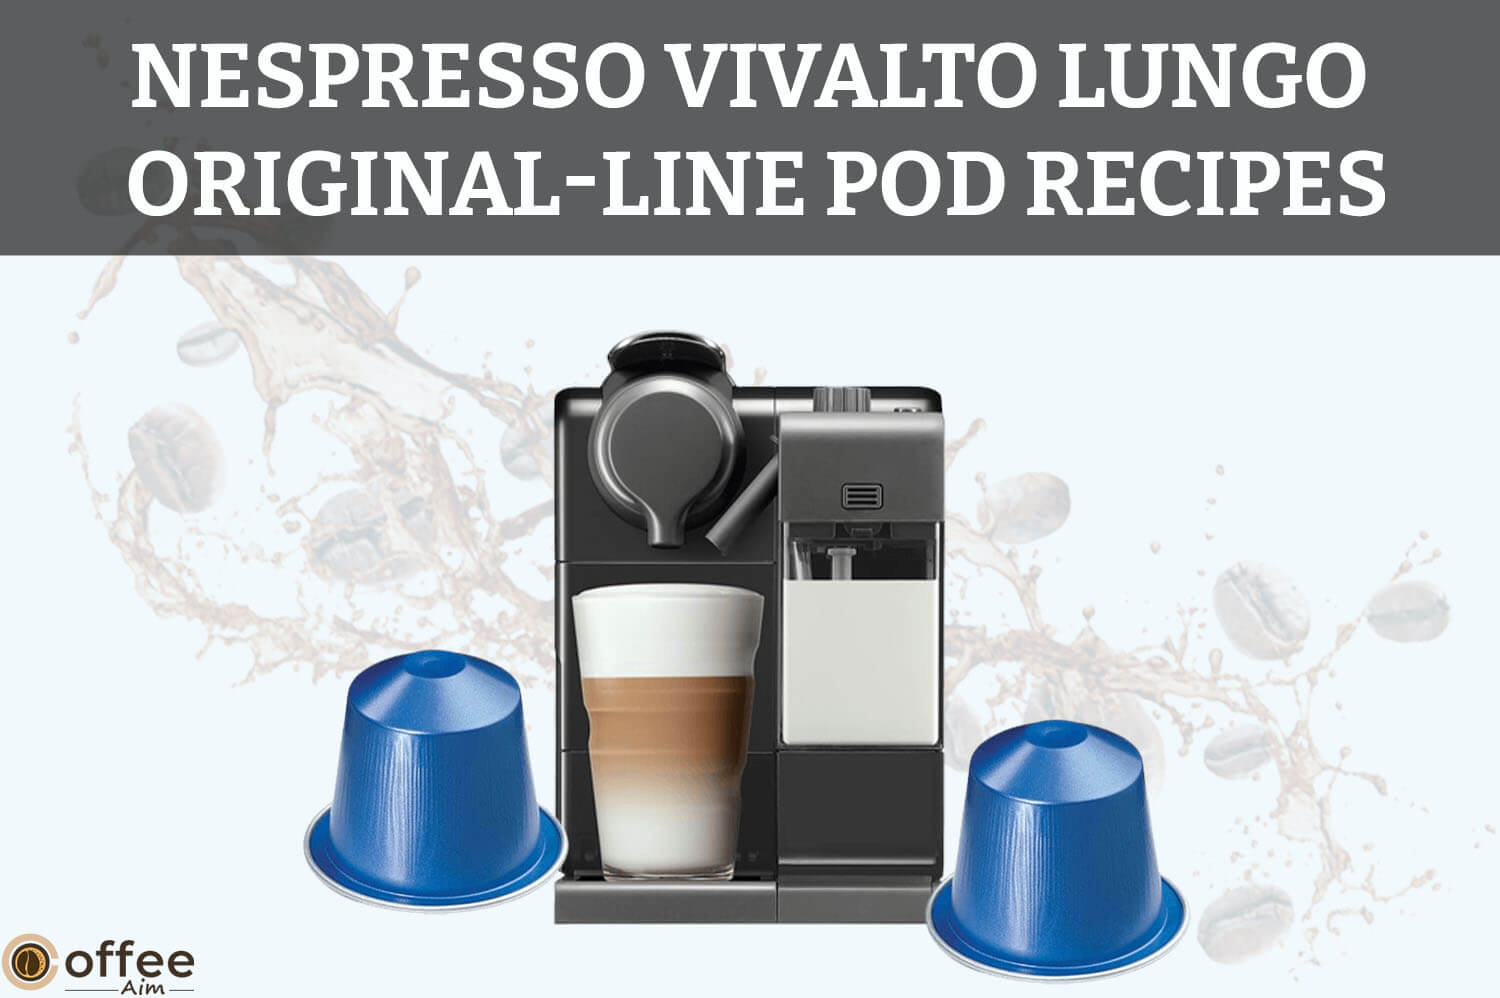 Nespresso-Vivalto-Lungo-Original-Line-Pod-Recipes